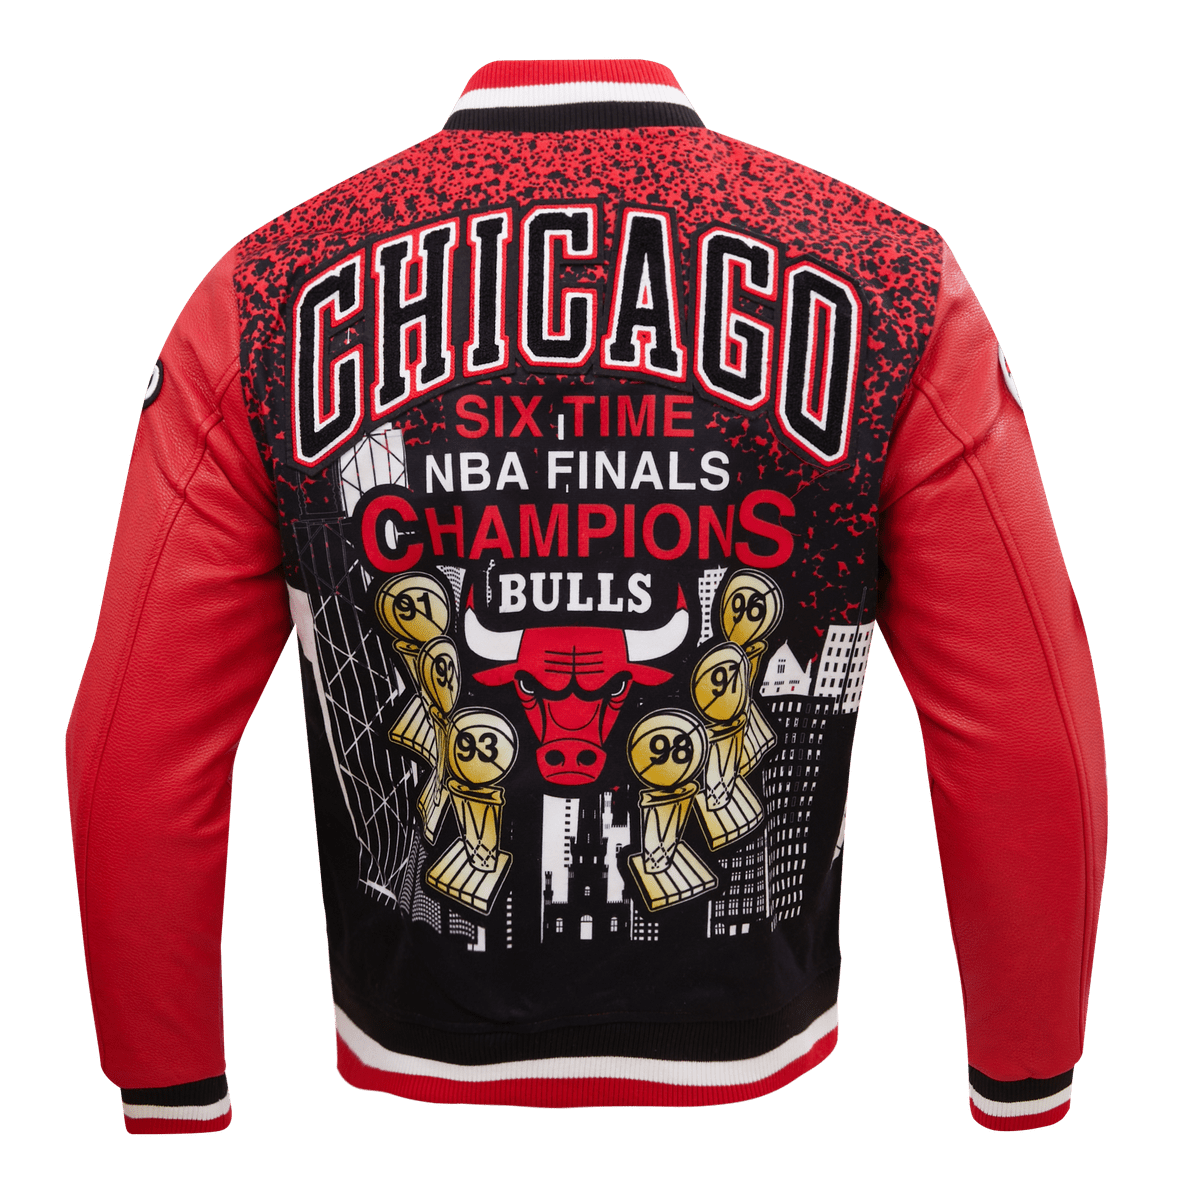 Chicago Bulls Leather Jacket  NBA Chicago Bulls Leather Jacket